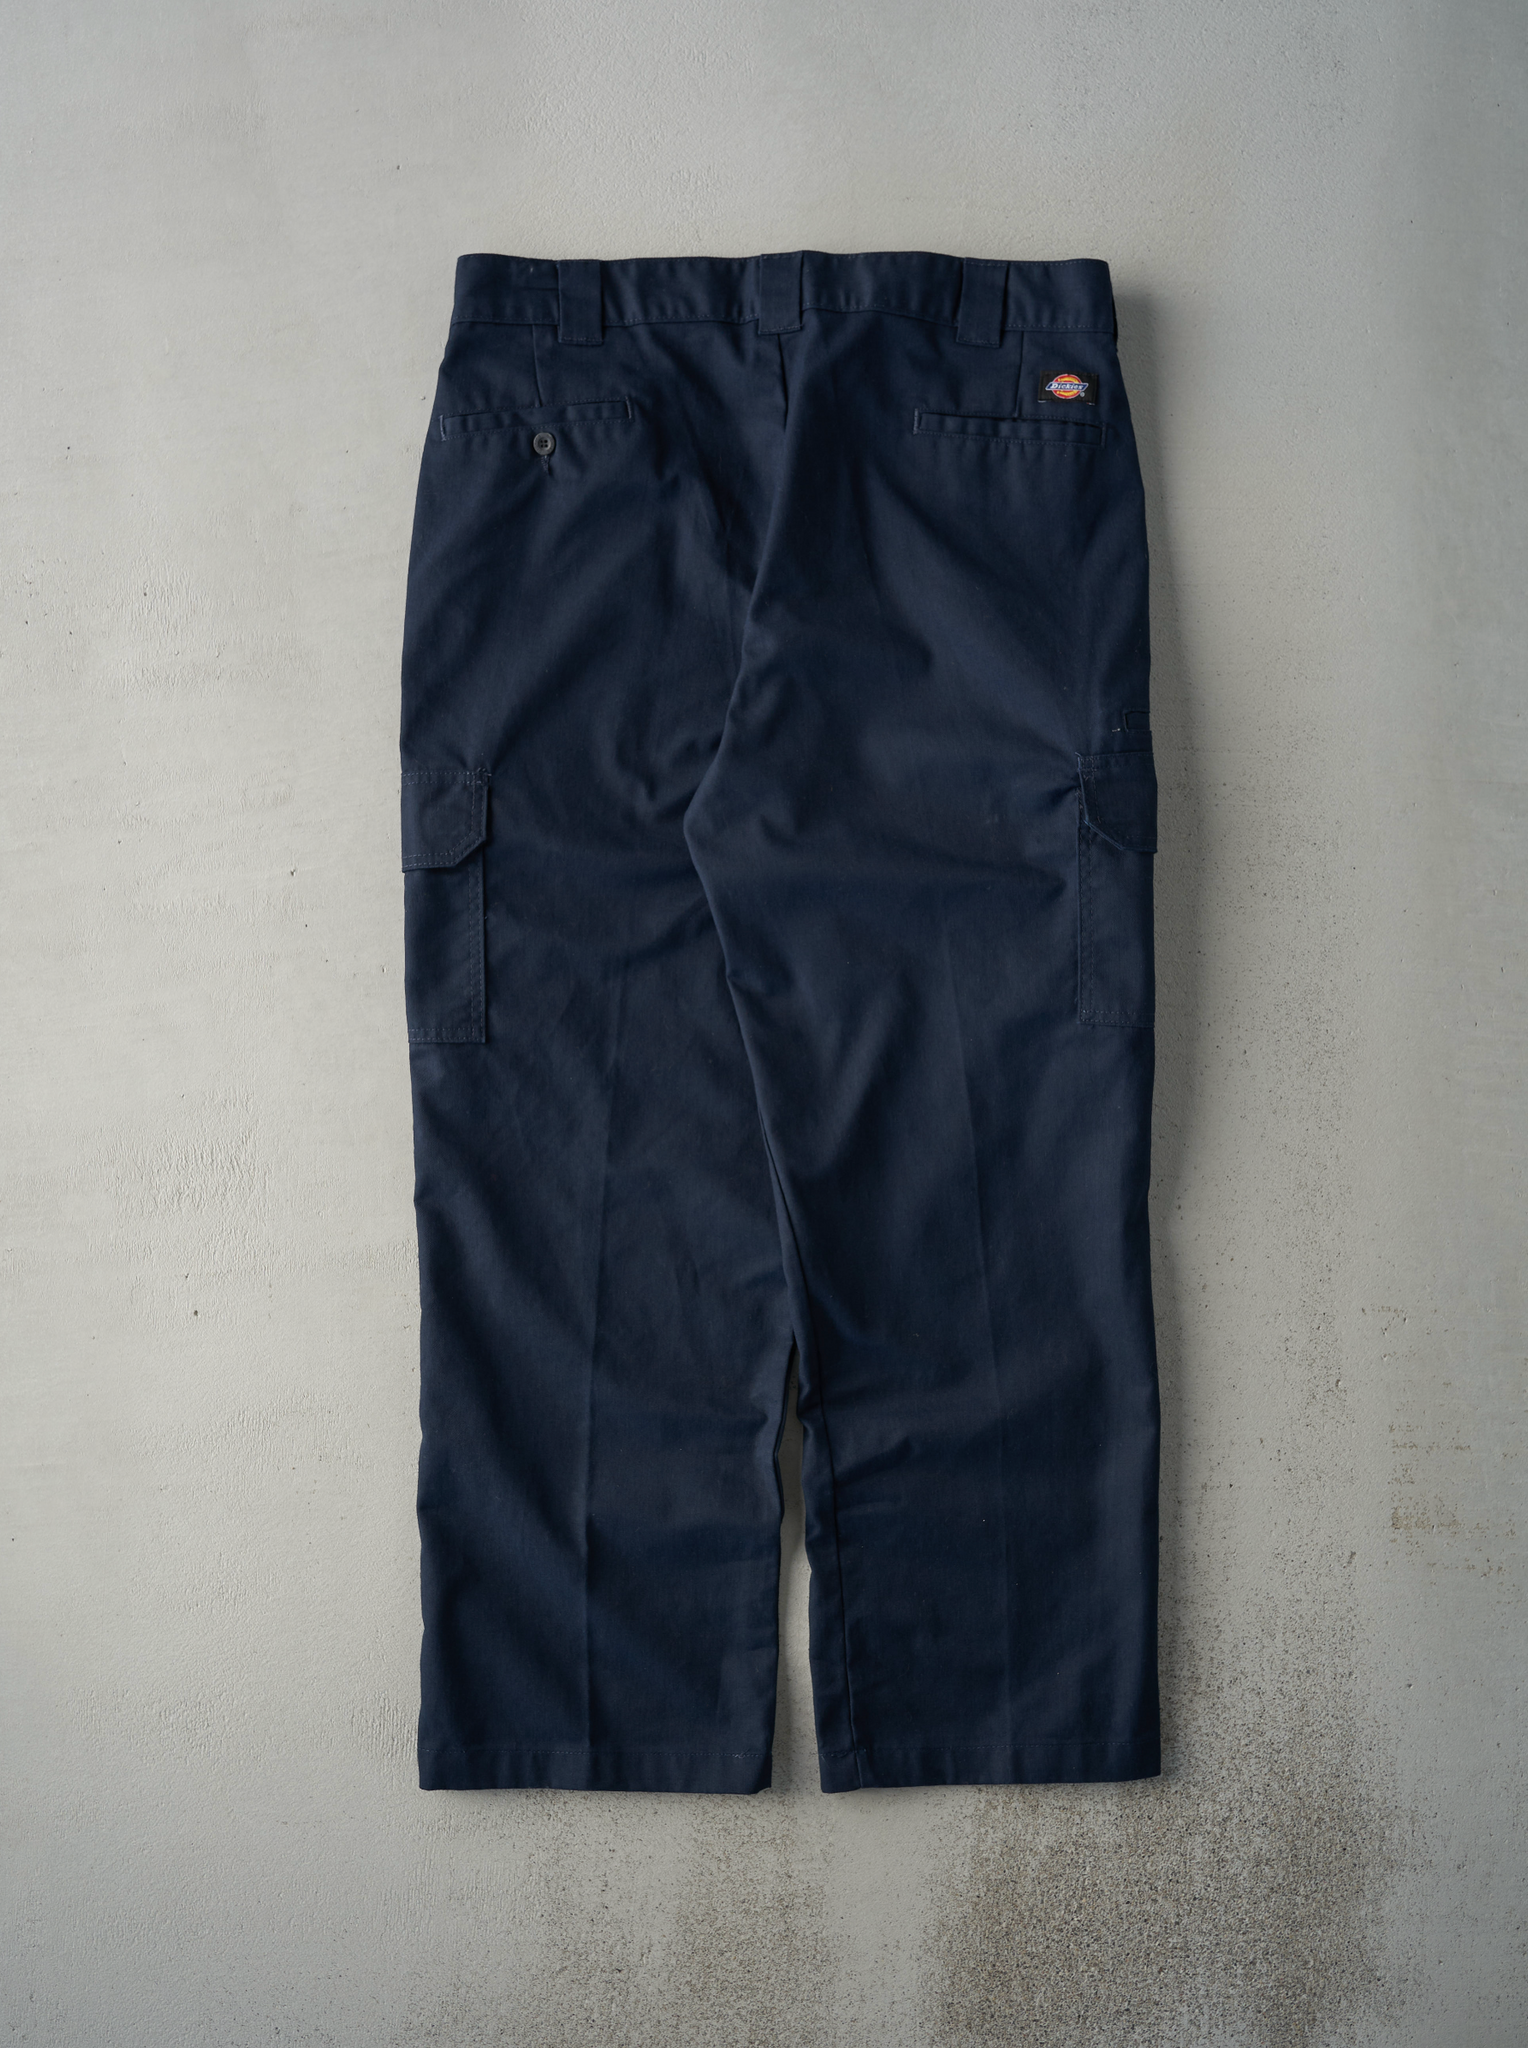 Vintage 90s Navy Blue Dickies Regular Straight Pants (37x29.5)